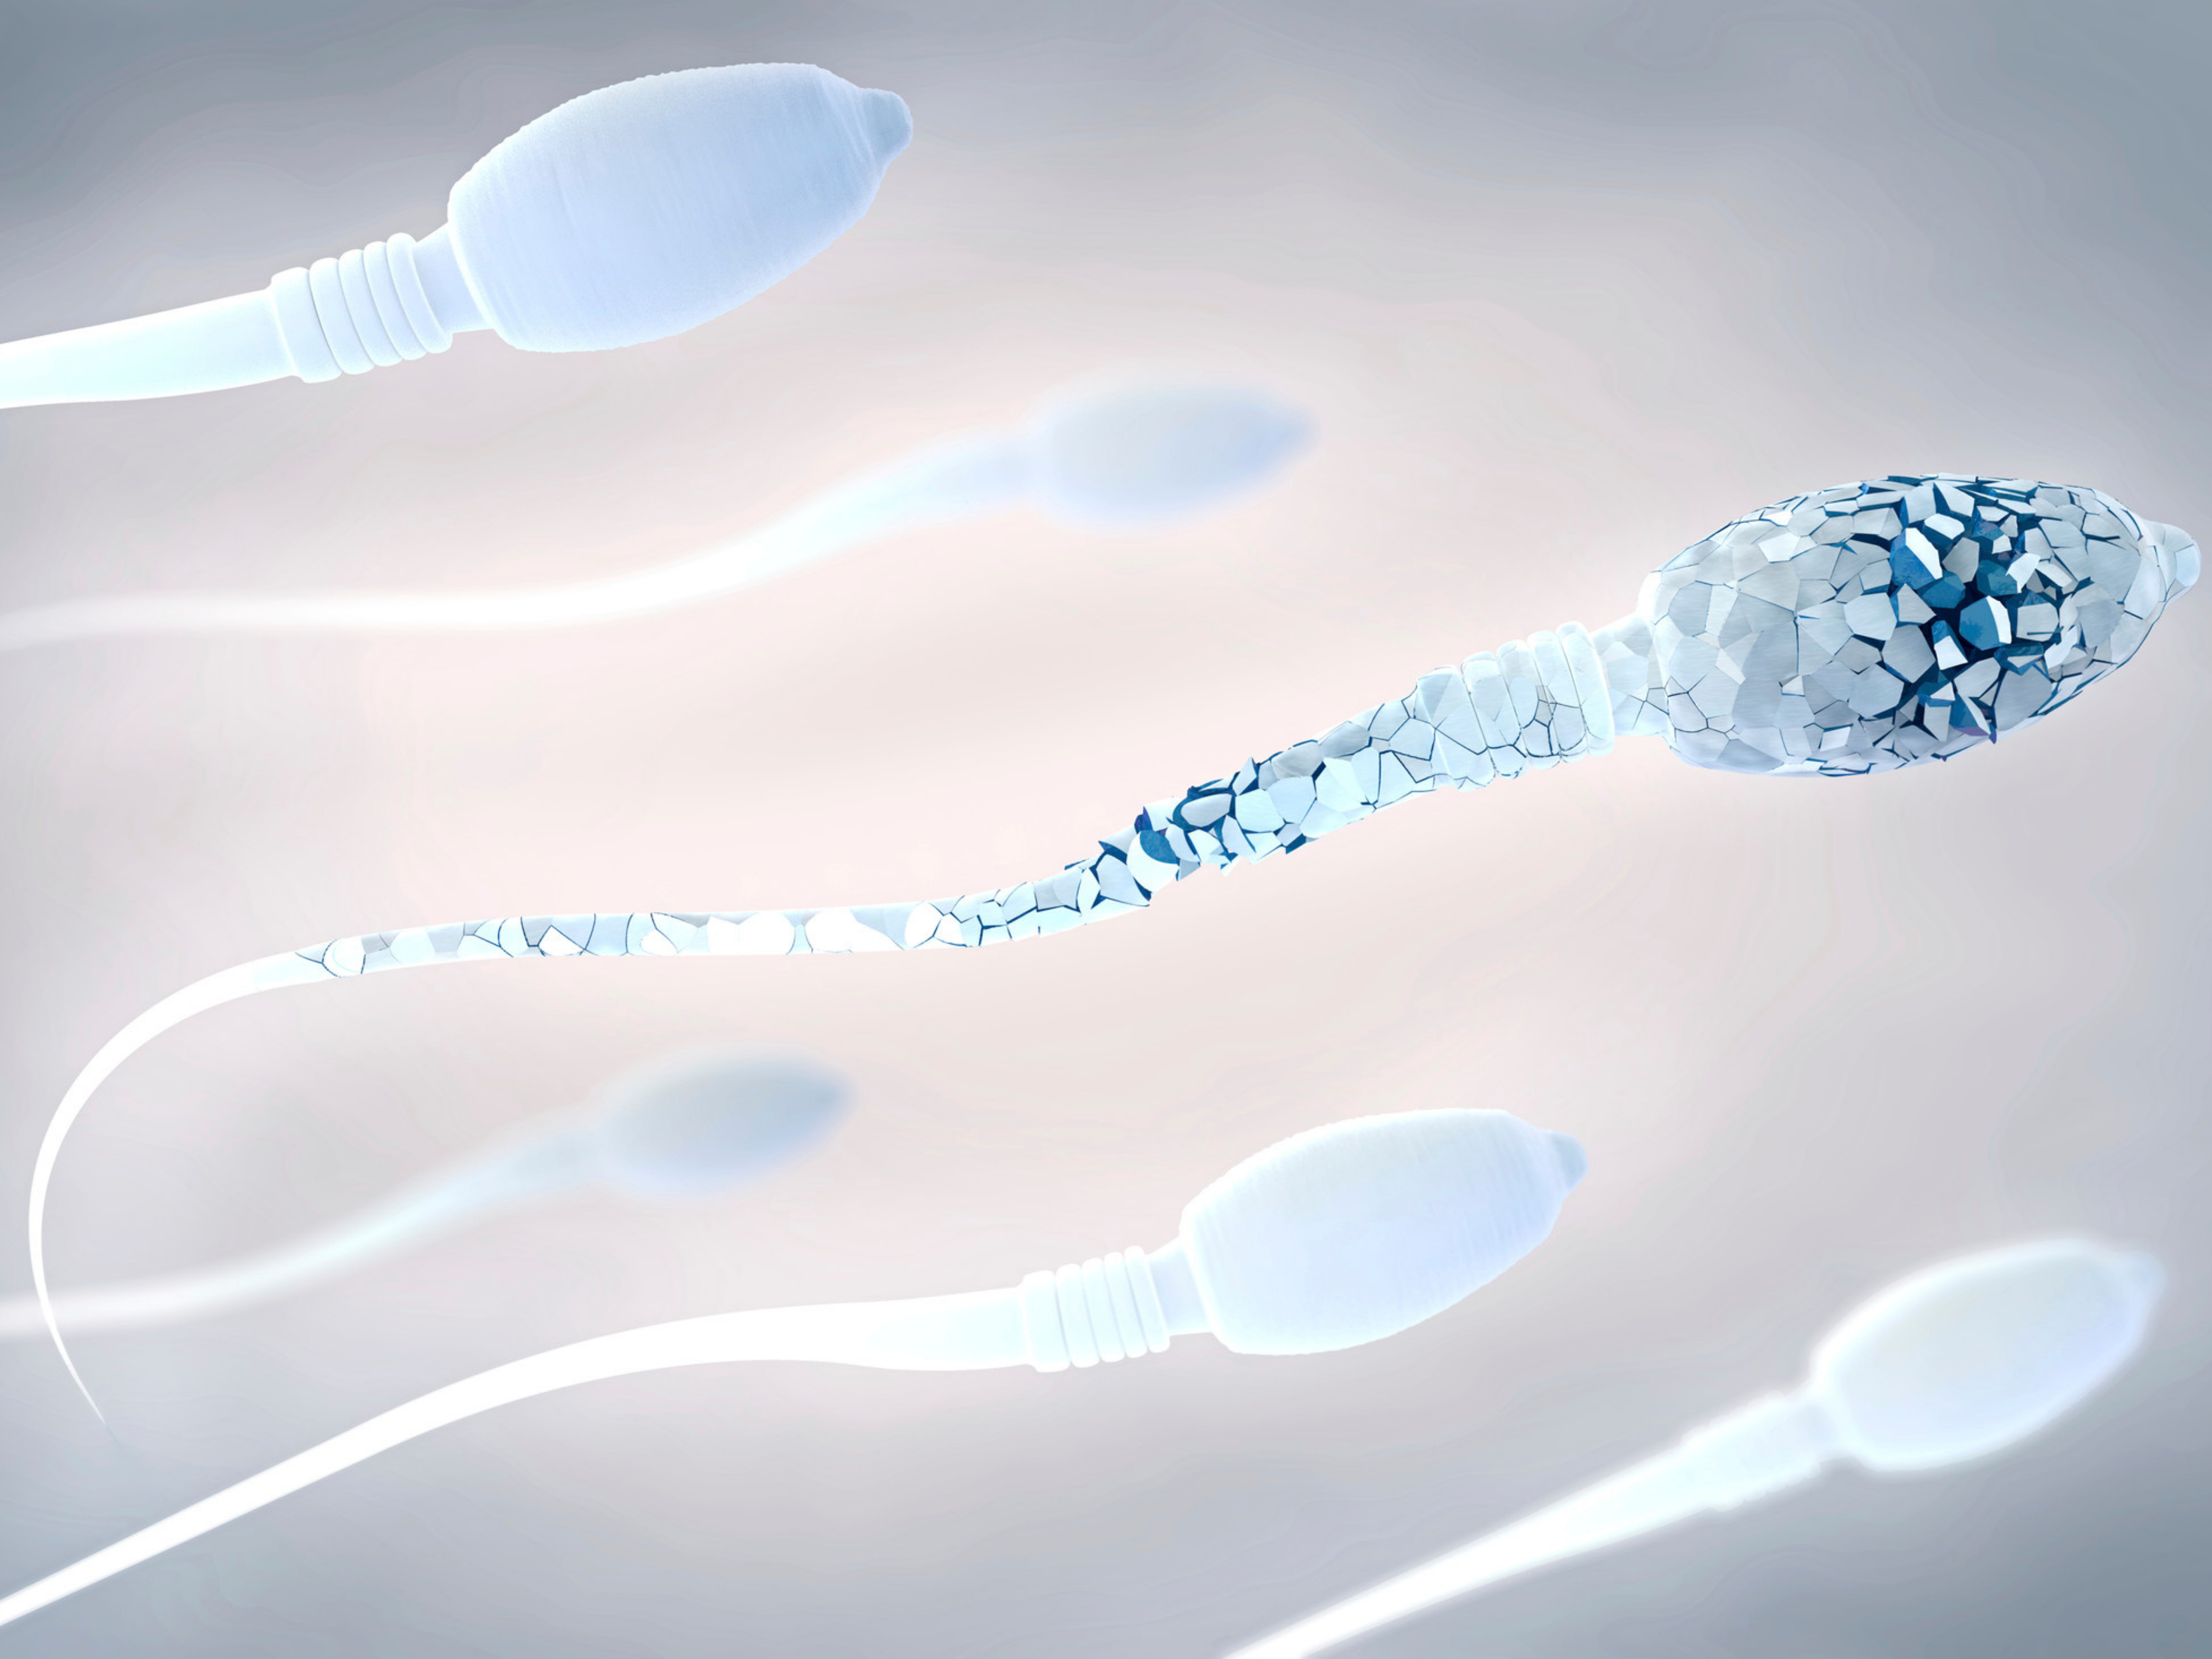 Qualidade seminal: entenda sobre a fertilidade masculina